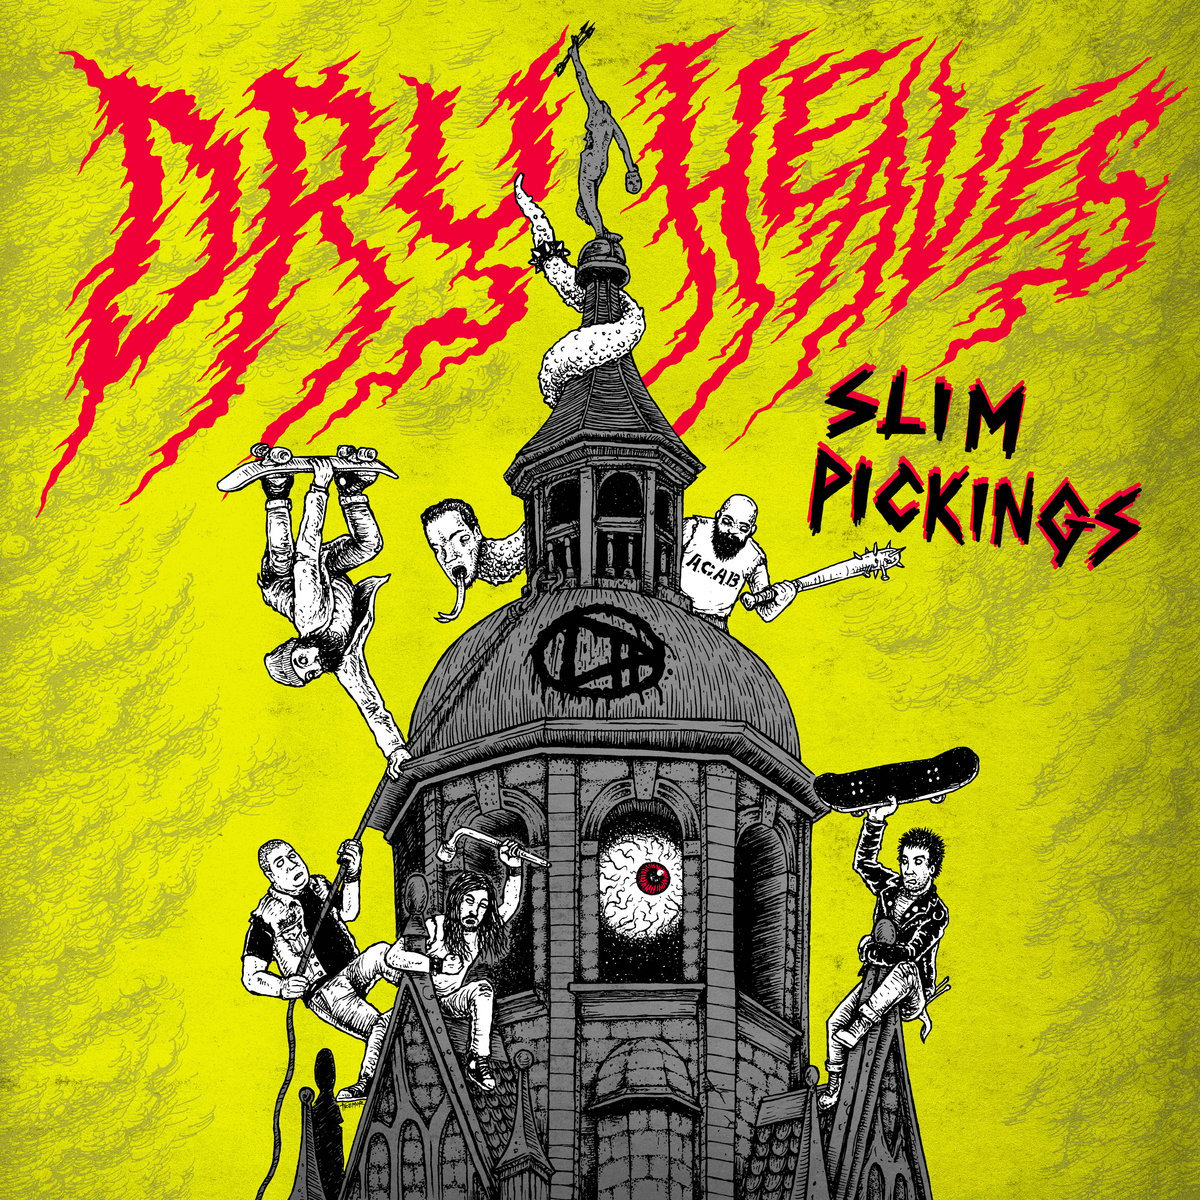 Image of DRY HEAVES "Slim pickings" LP on Red wax